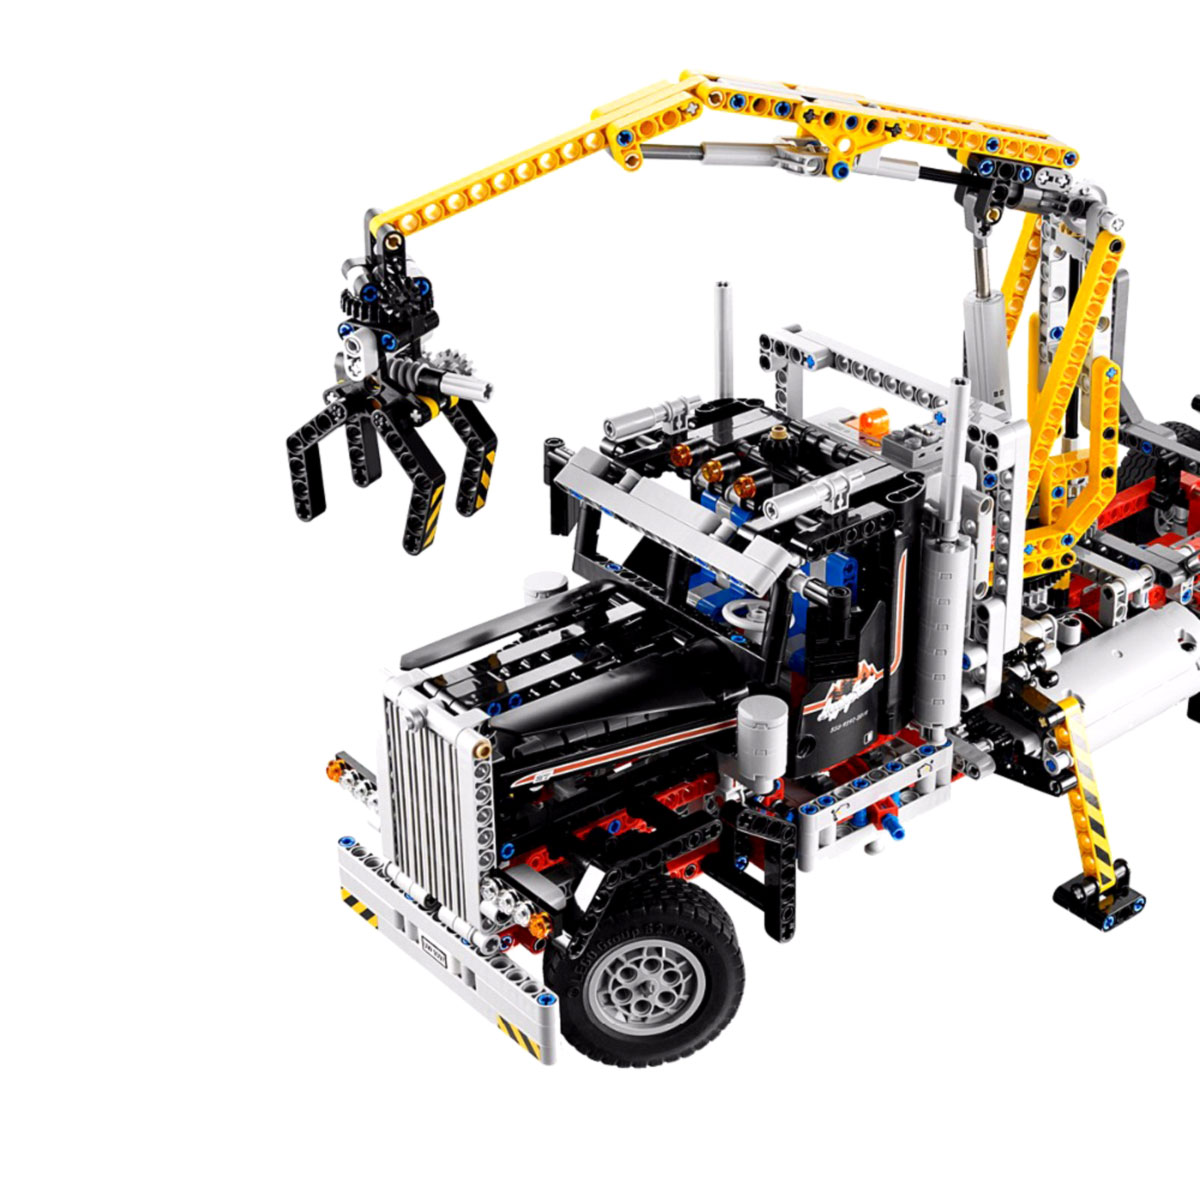 Картинки лего техника: ⬇ Скачать картинки Lego technic, стоковые фото Lego technic в хорошем качестве